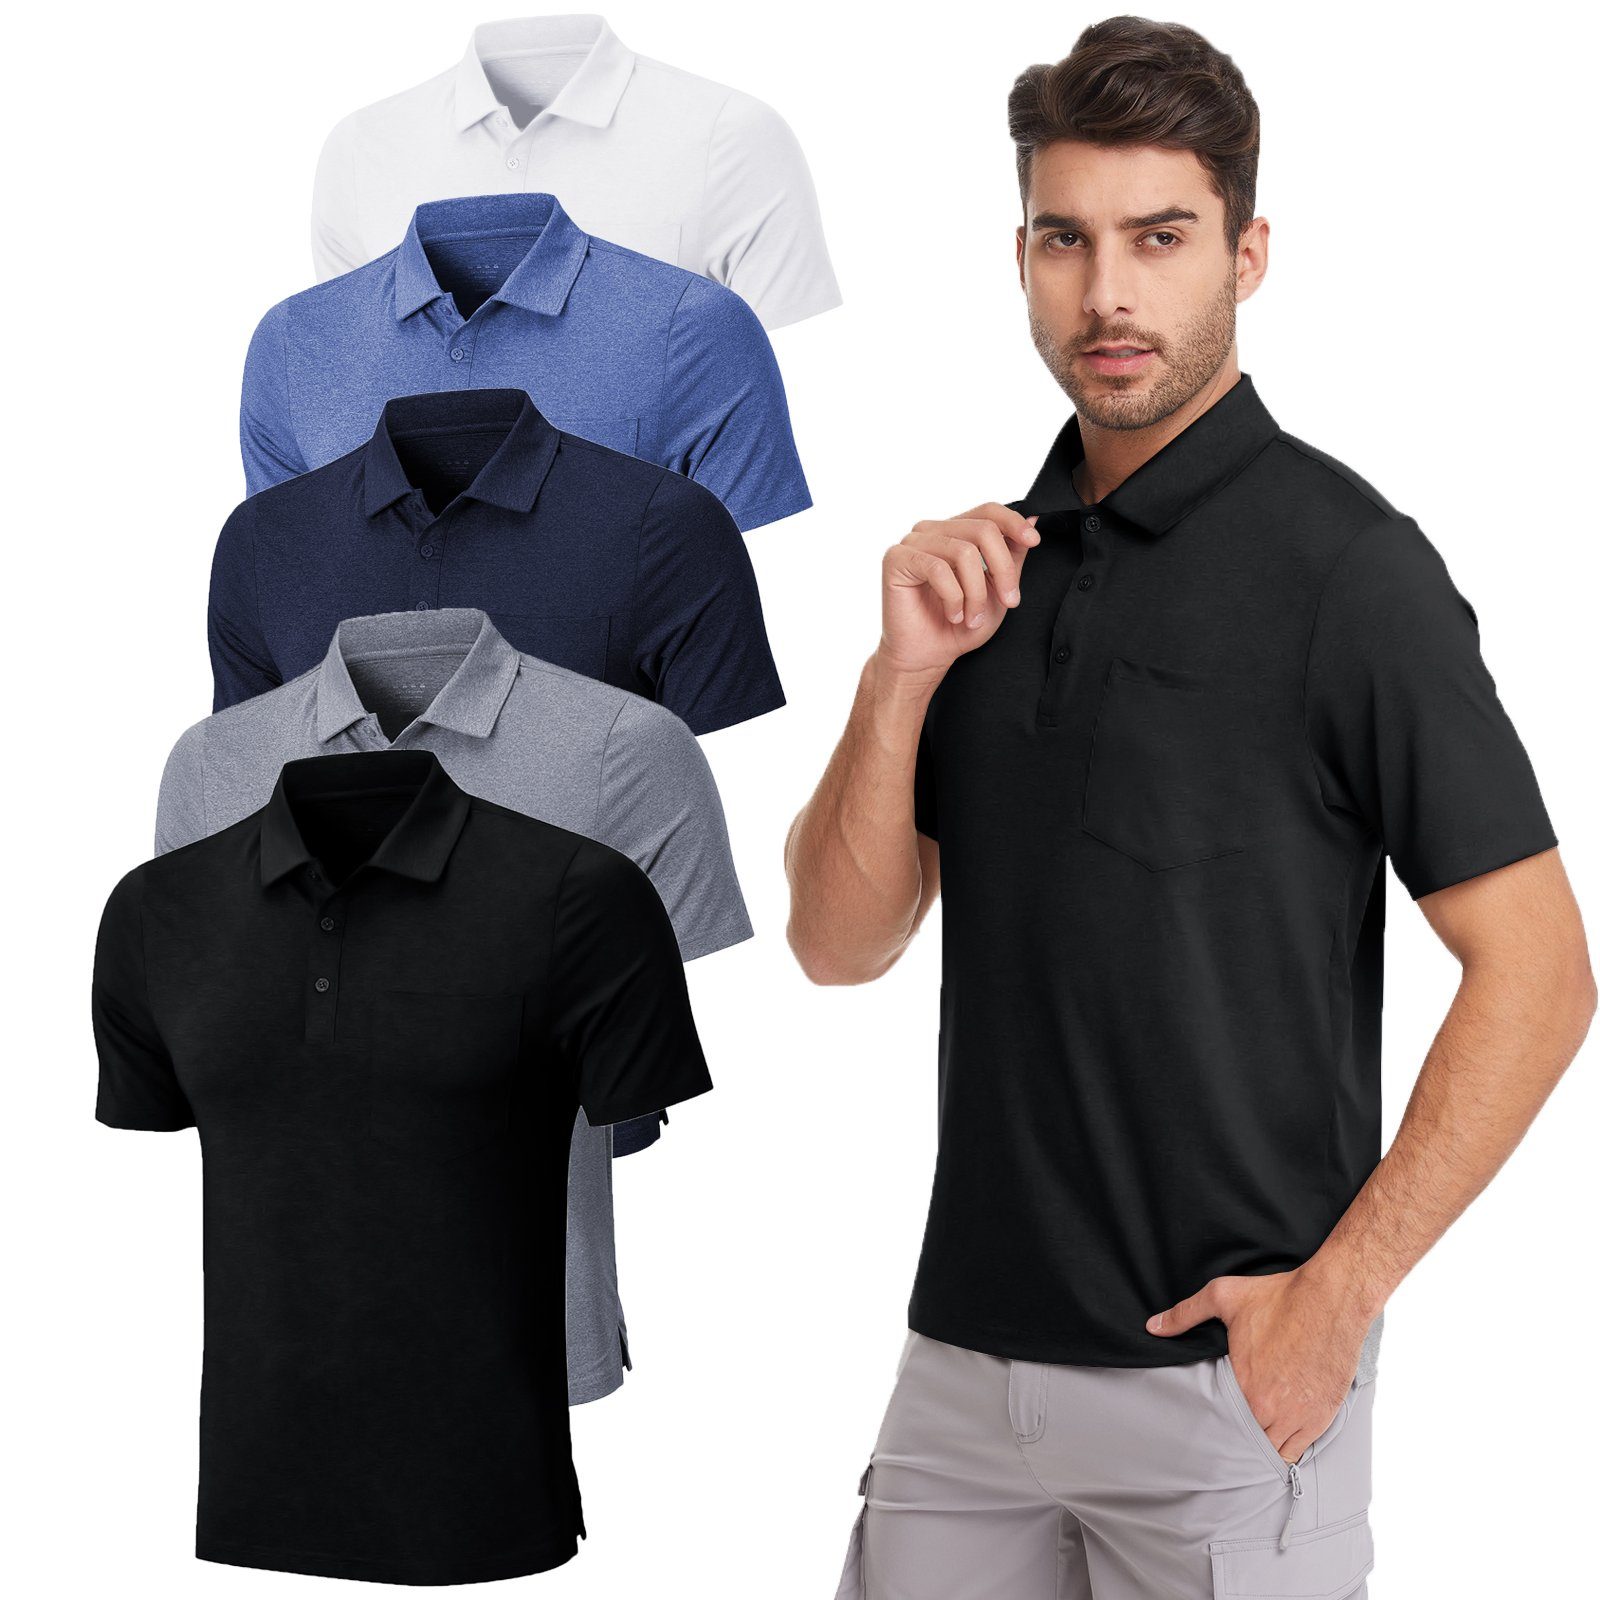 MEETYOO Tee Button-Down-Kragen, (Kurzarm Poloshirt Casual, Hemd) Navy Polohemd Herren Atmungsaktiv Unifarben, Poloshirt Classic T-Shirt,